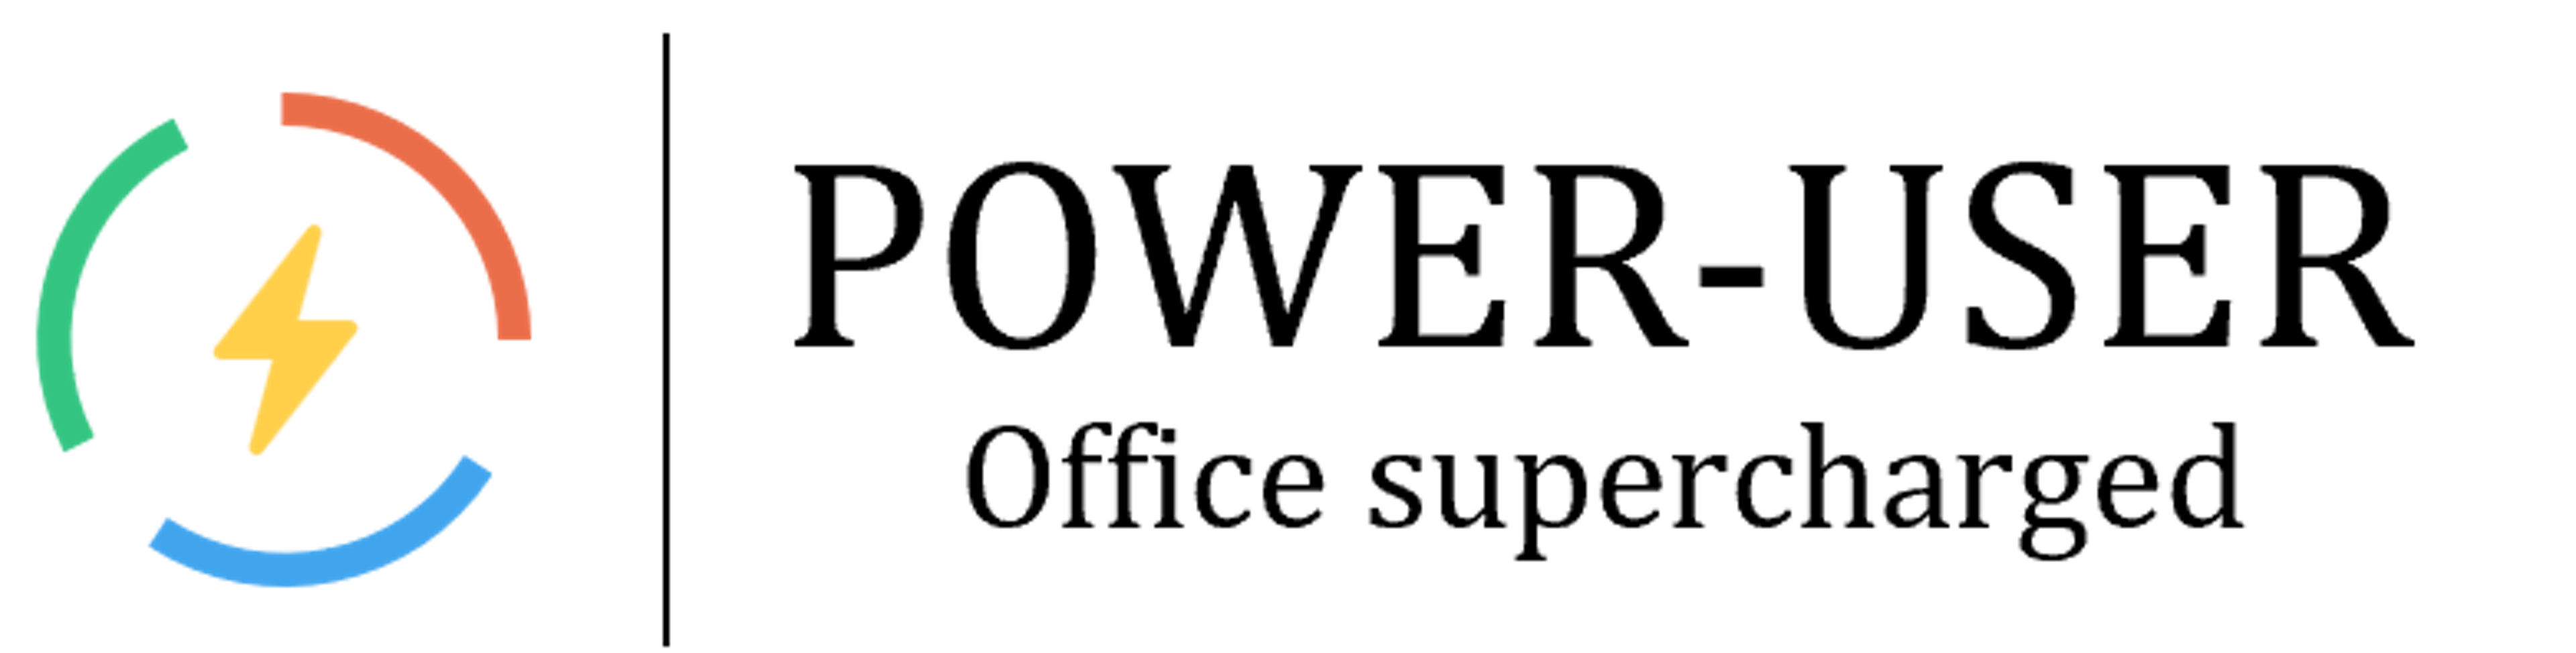 Power-user Logo